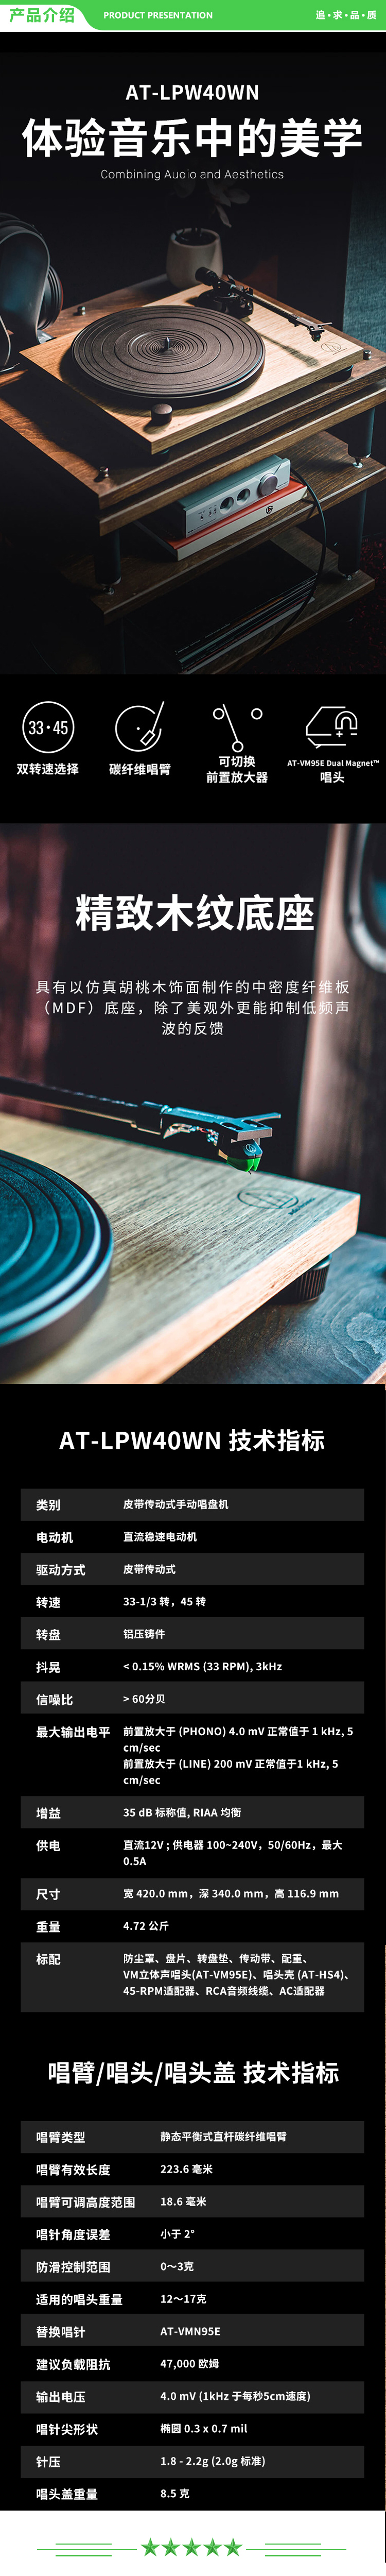 铁三角 Audio-technica AT-LPW40WN 皮带唱盘机黑胶唱机留声机发烧复古唱片机 .jpg